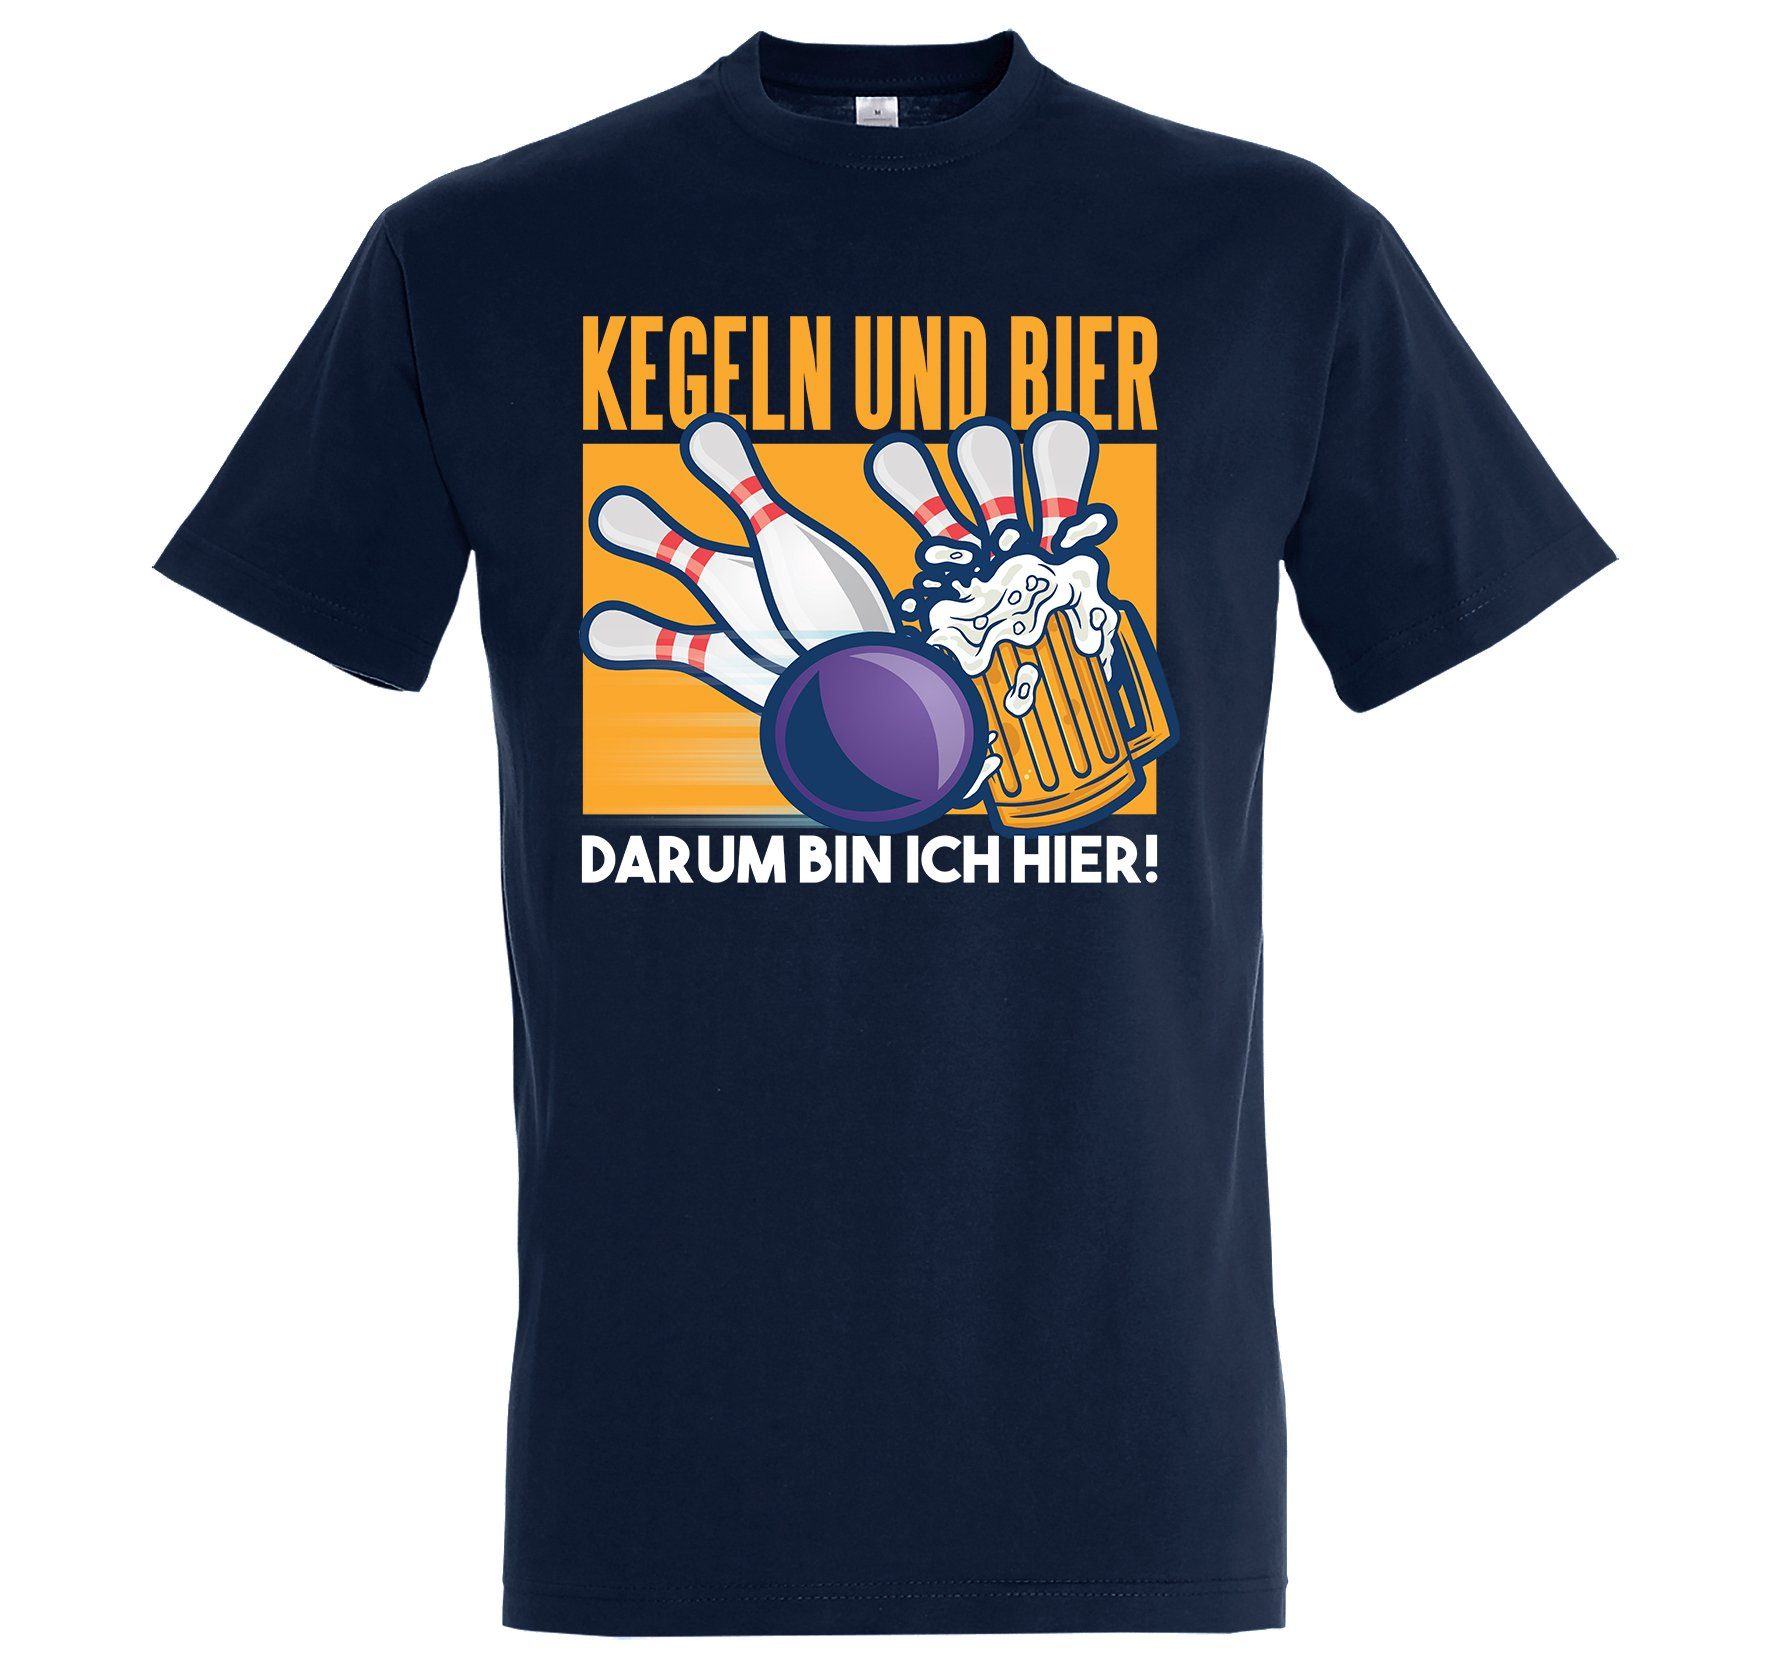 Youth Designz T-Shirt "Kegeln Und Ich Hier" T-Shirt Darum Herren Frontprint Bier, lustigem mit Bin Navyblau